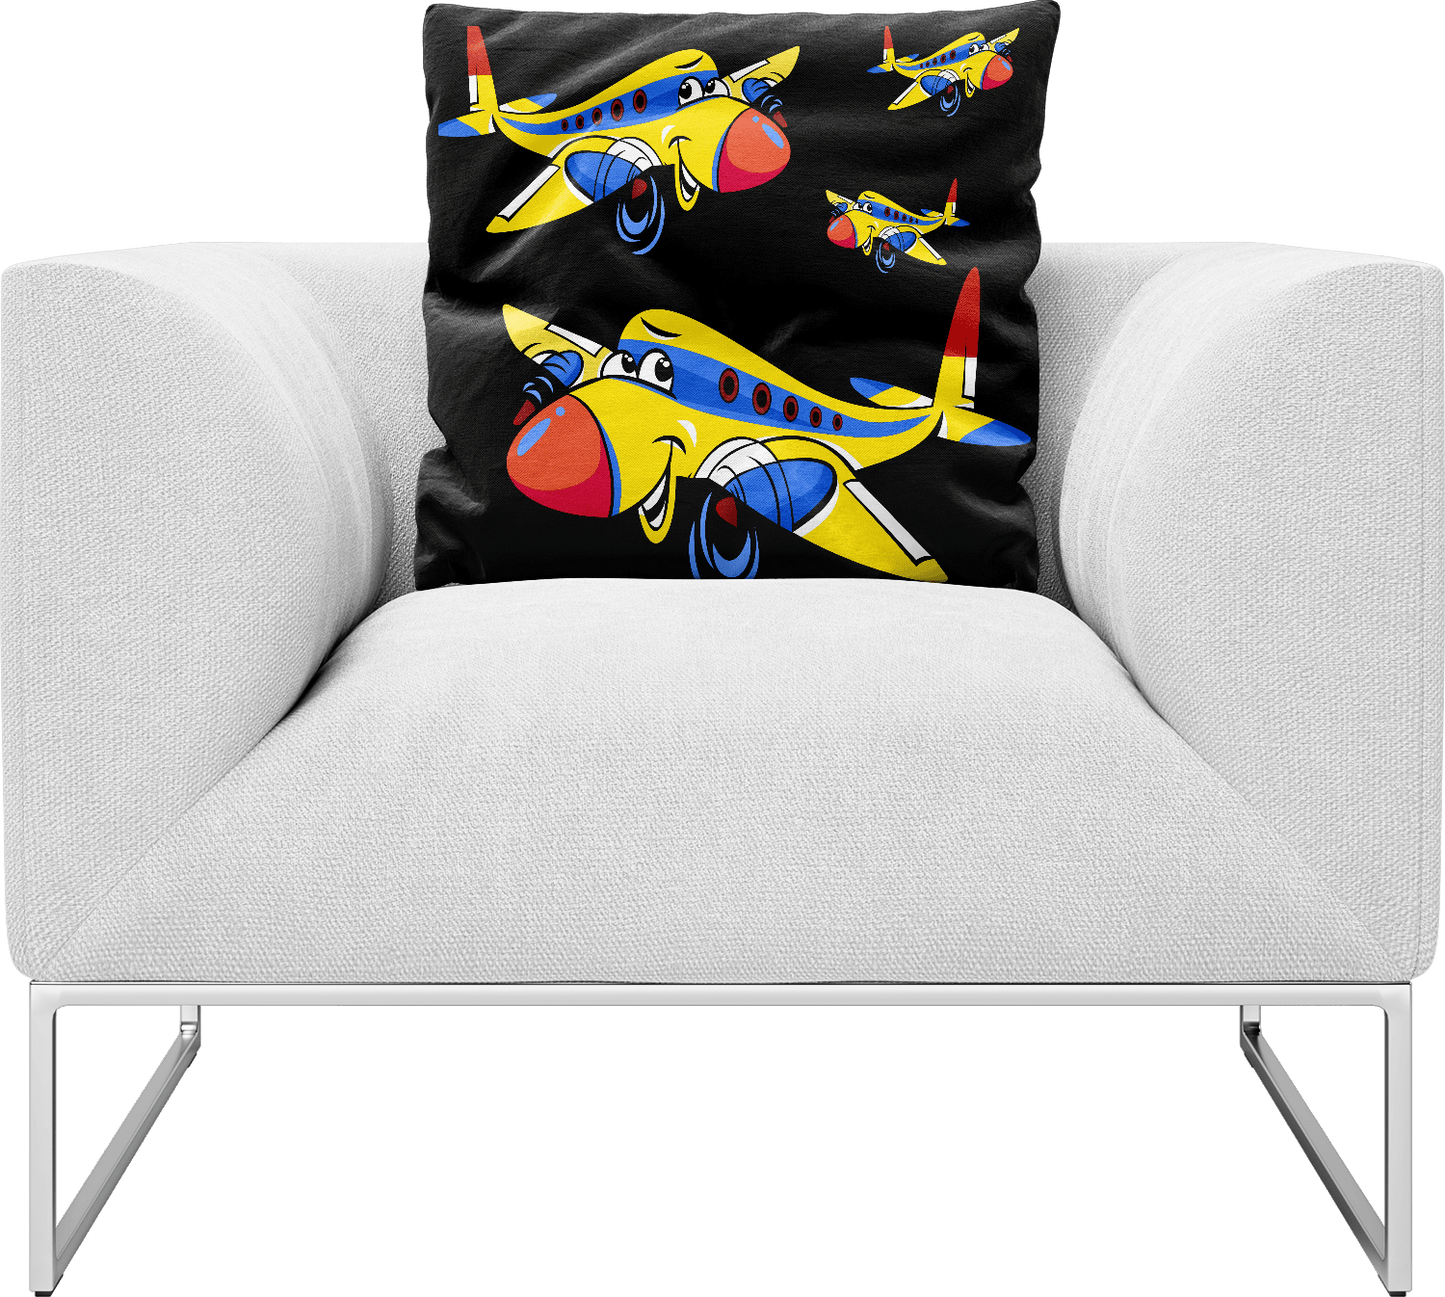 Jet Plane Pillows Cushions - fungear.com.au